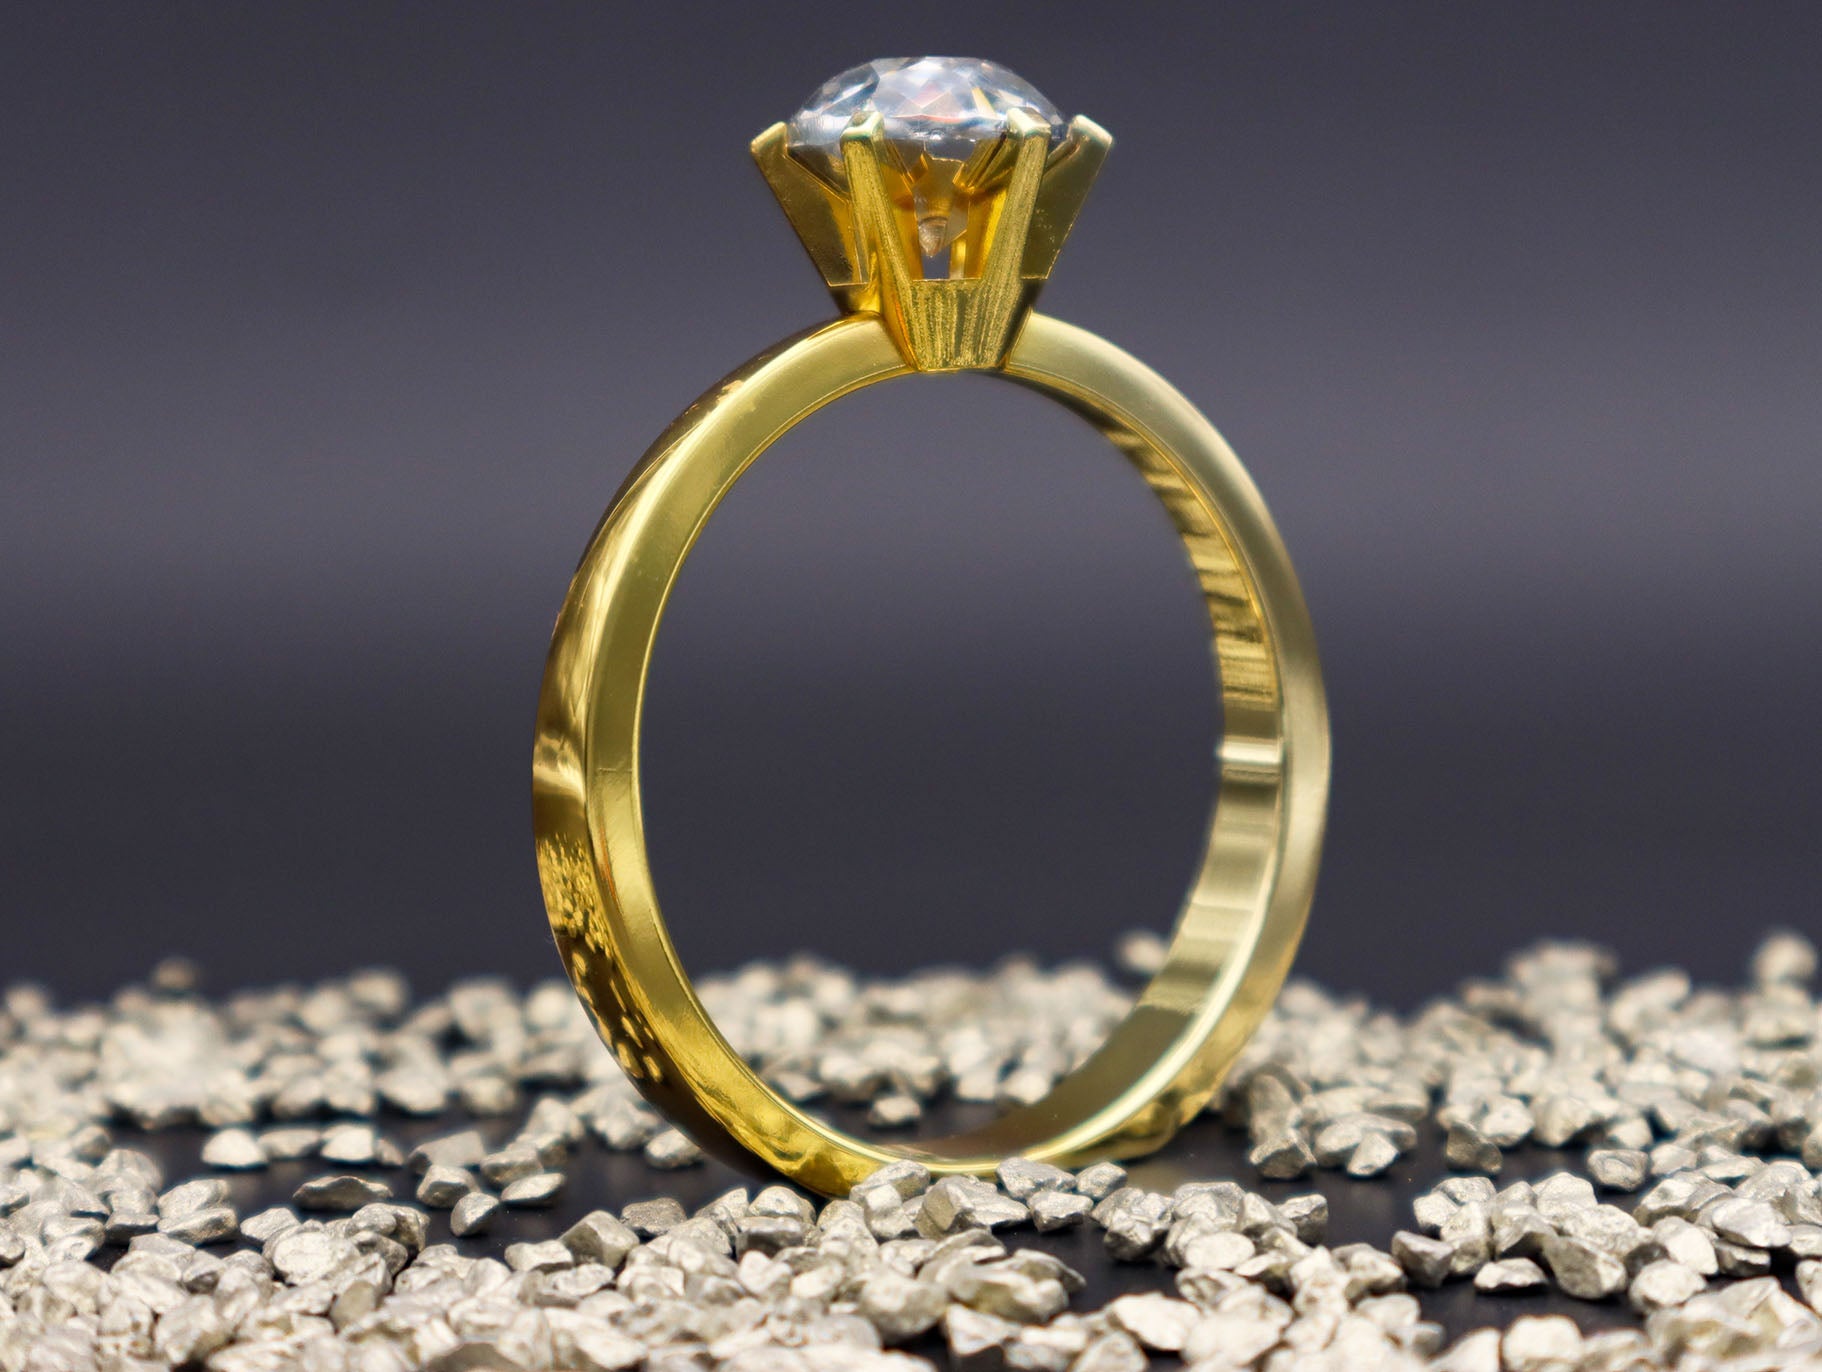 XXL Diamantring mit großem Kristall by SYH in Silber, Gold oder Roségold 8.5 cm